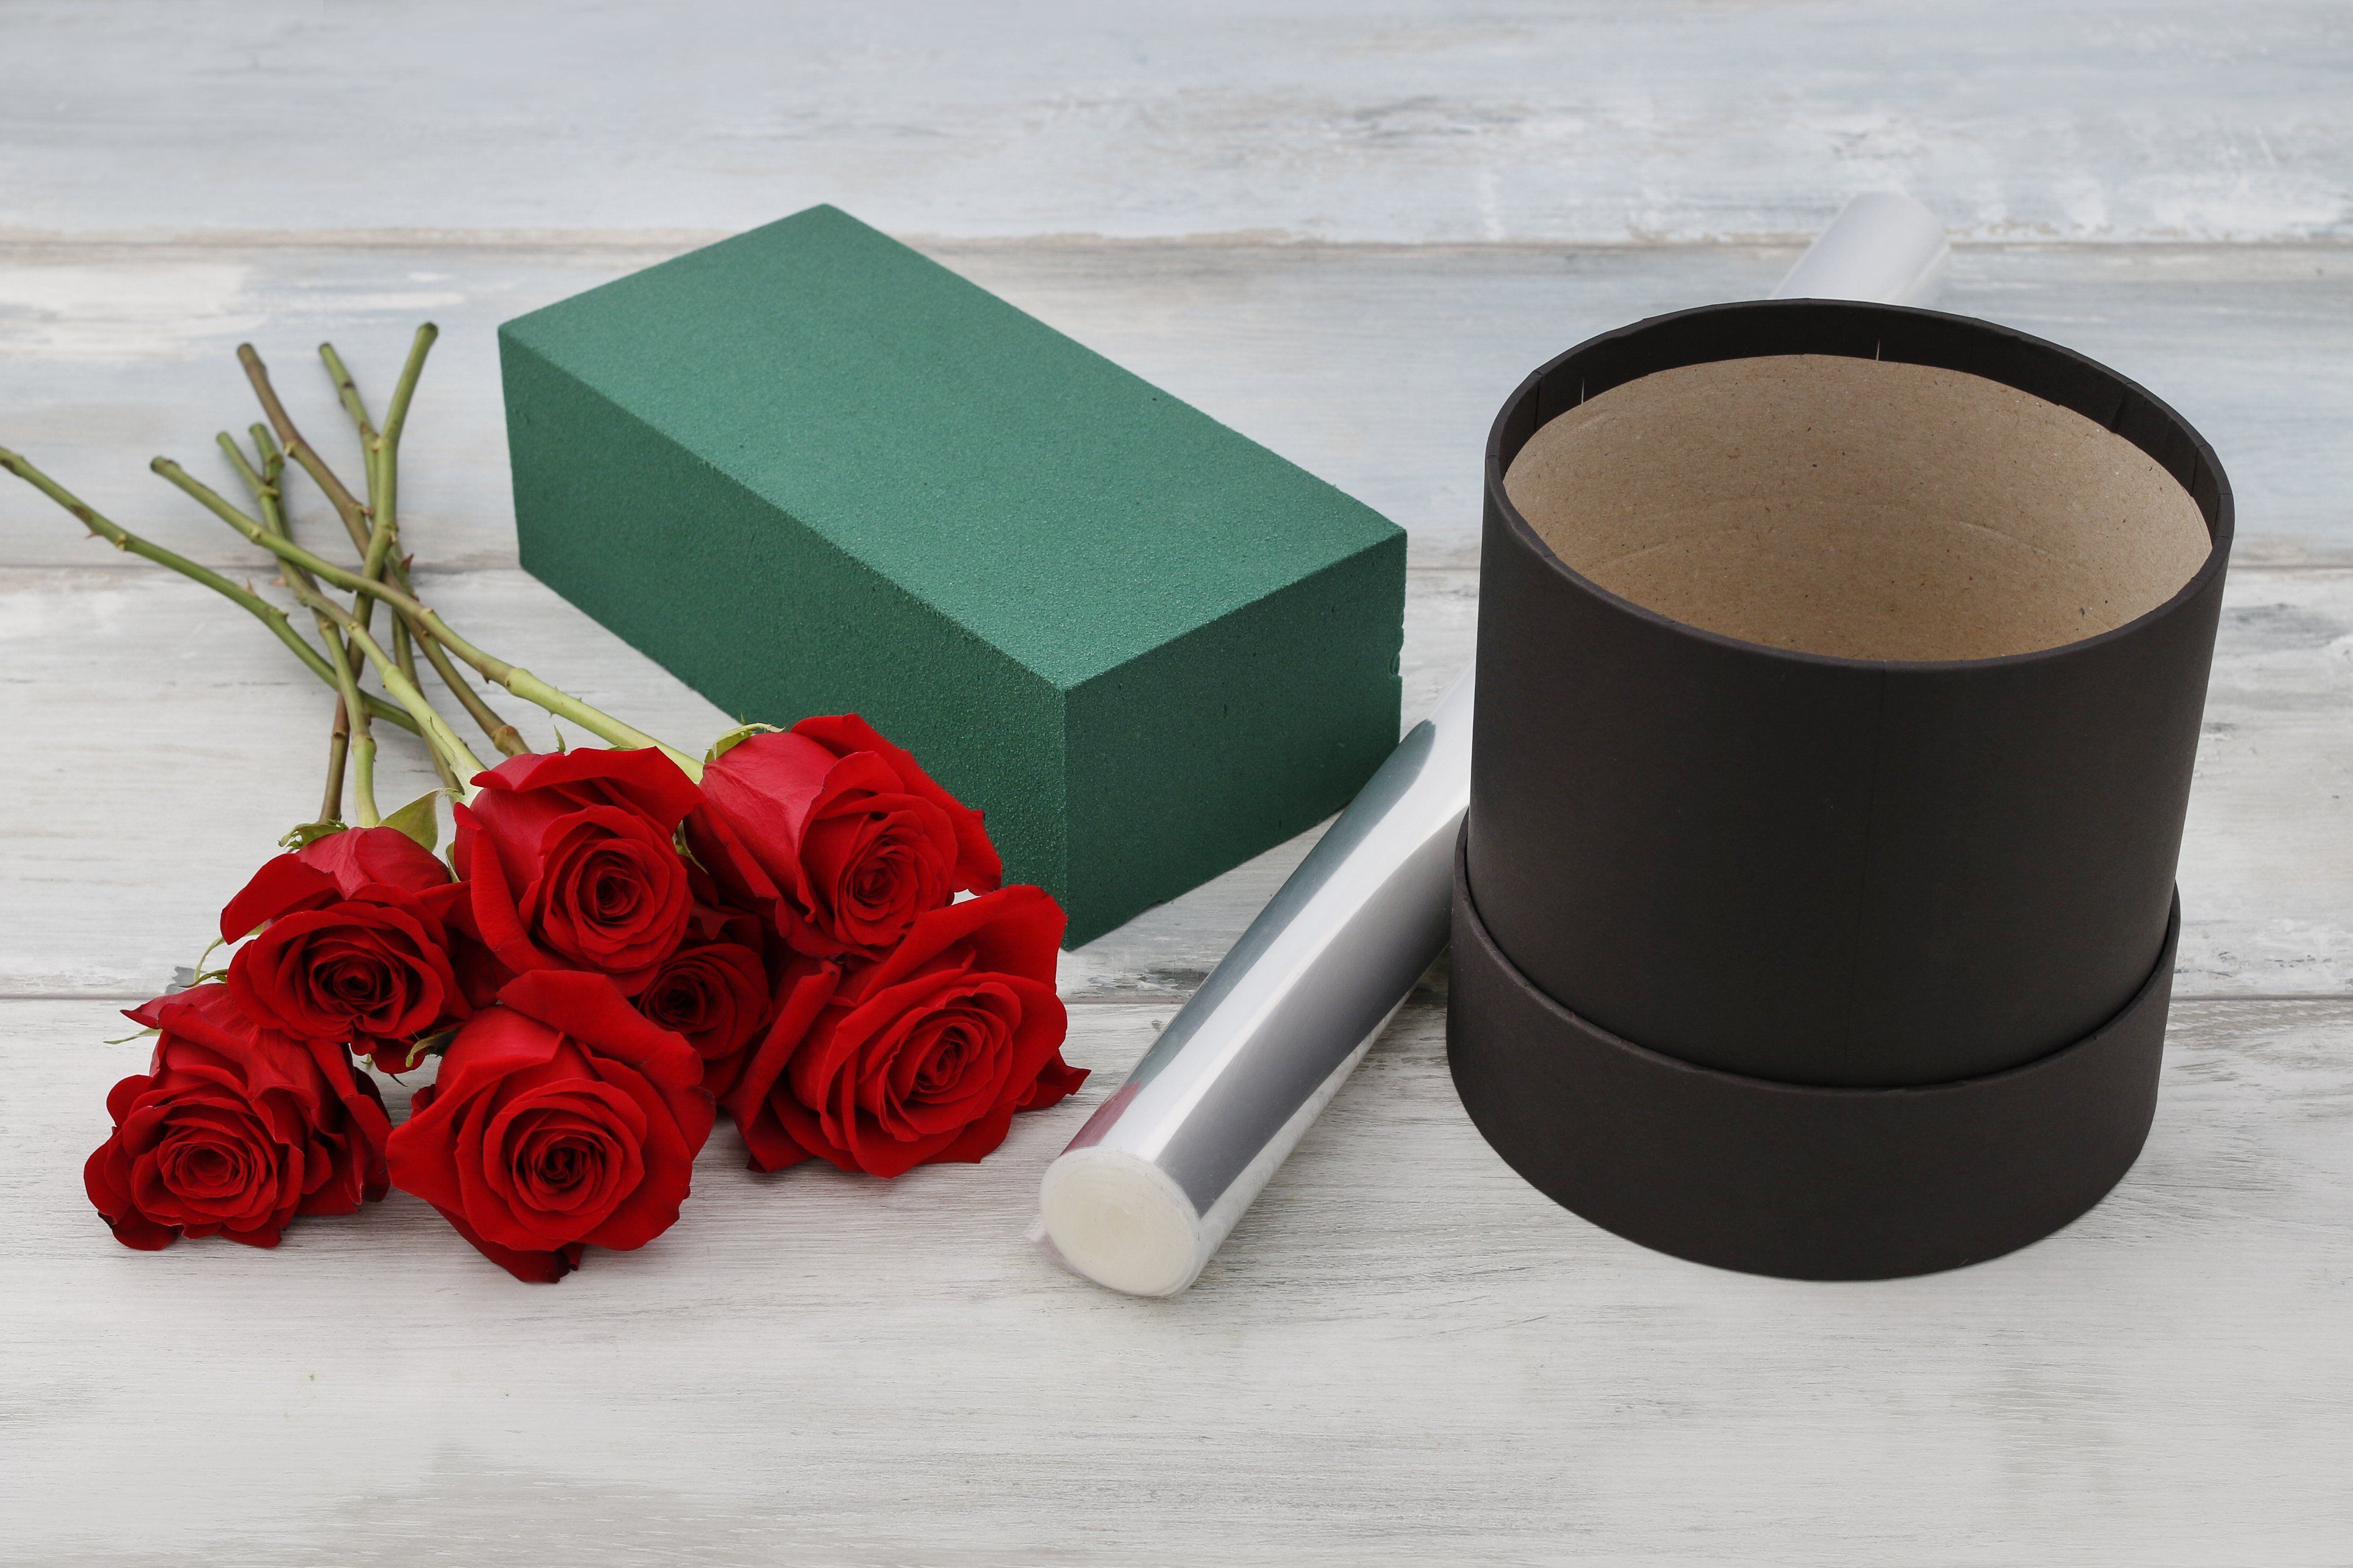 Para una caja de rosas necesitas: un ramo de rosas de su color favorito, papel celofán, espuma floral y una caja gruesa.